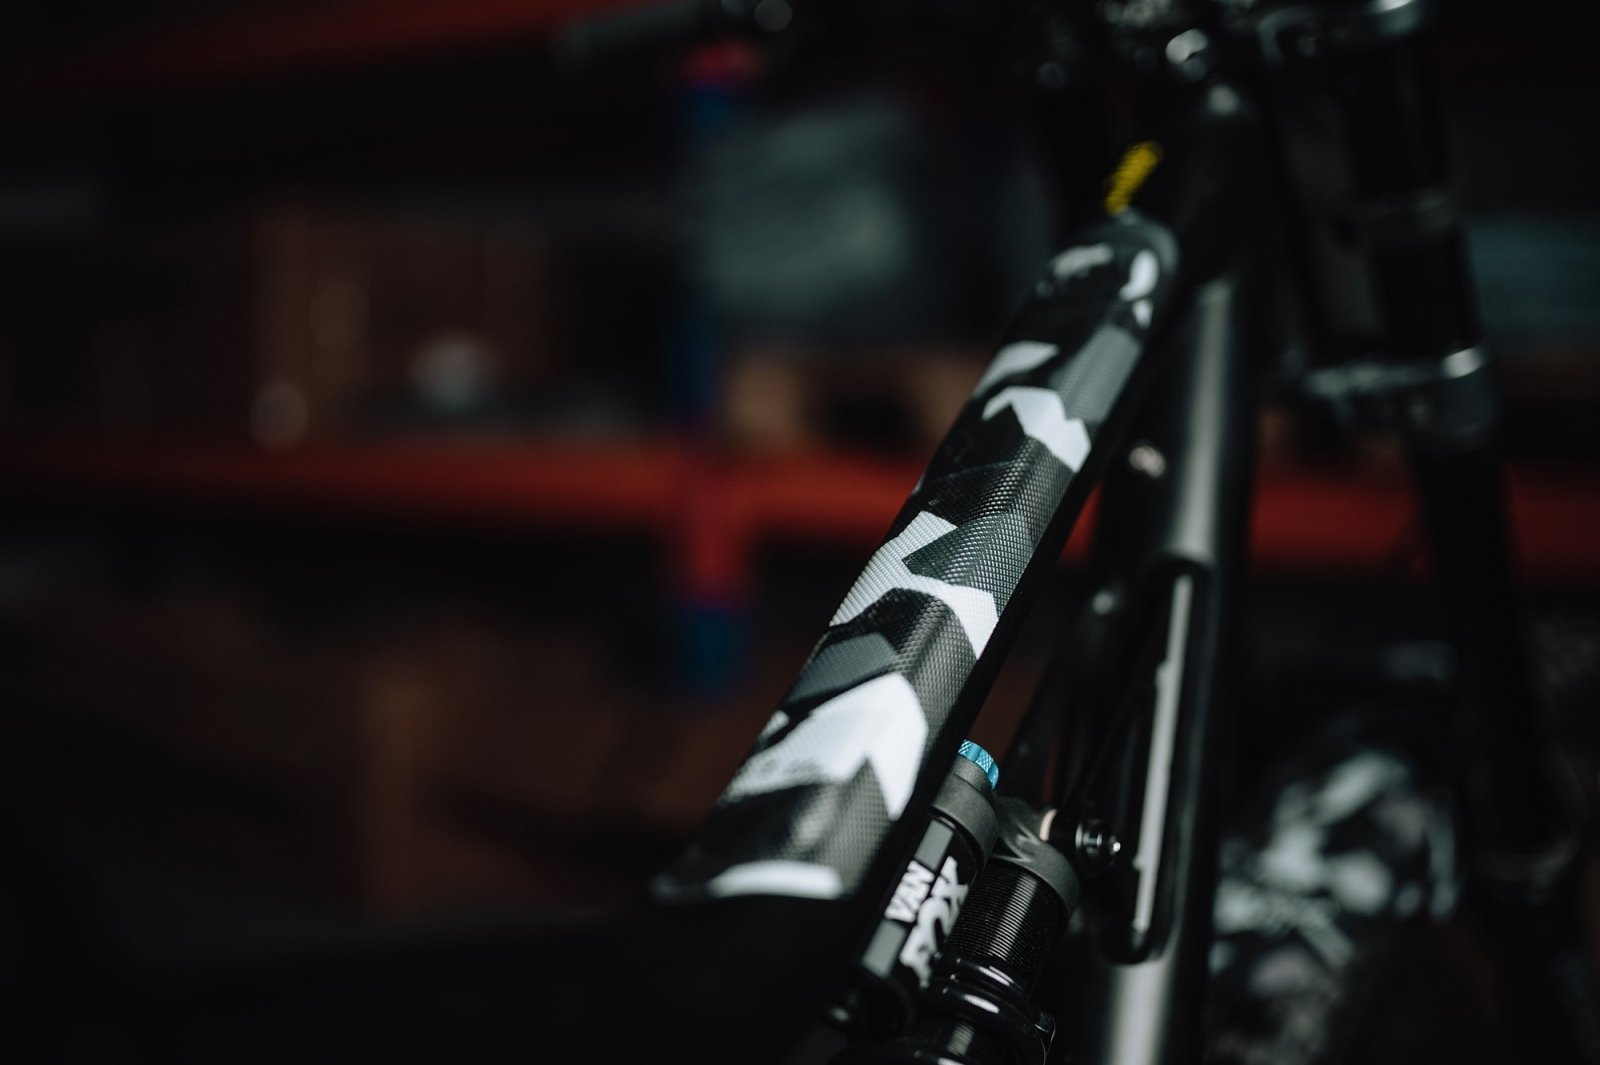 Hochwertige Karbonimitatleder Schutz Aufkleber für Fahrradrahmen in Schwarz